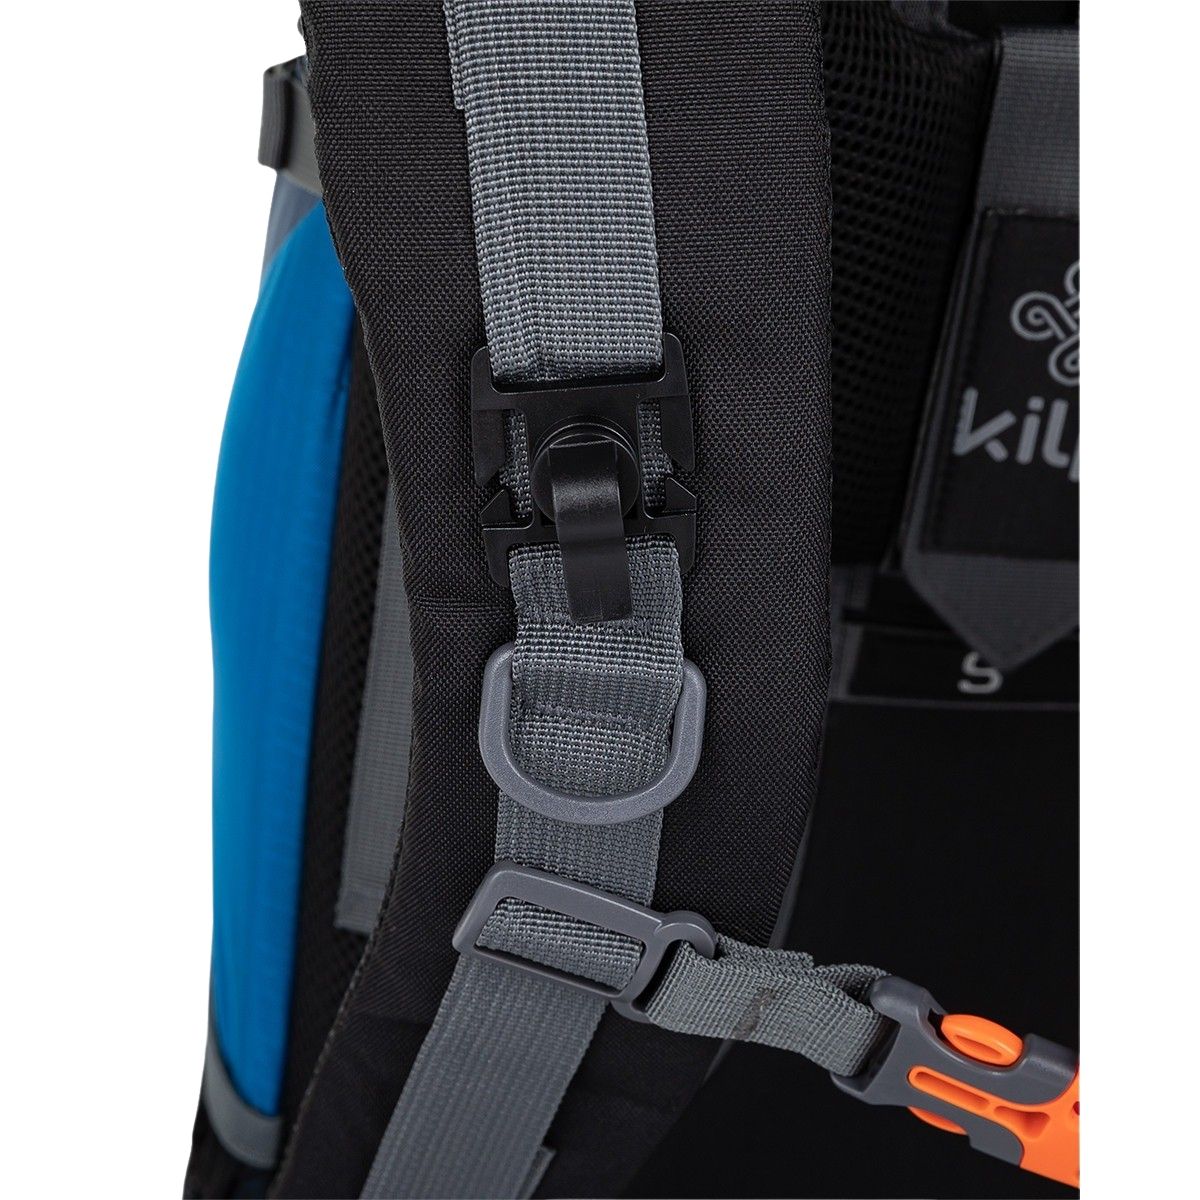 Kilpi Ecrins, backpack, 45+5L, blue